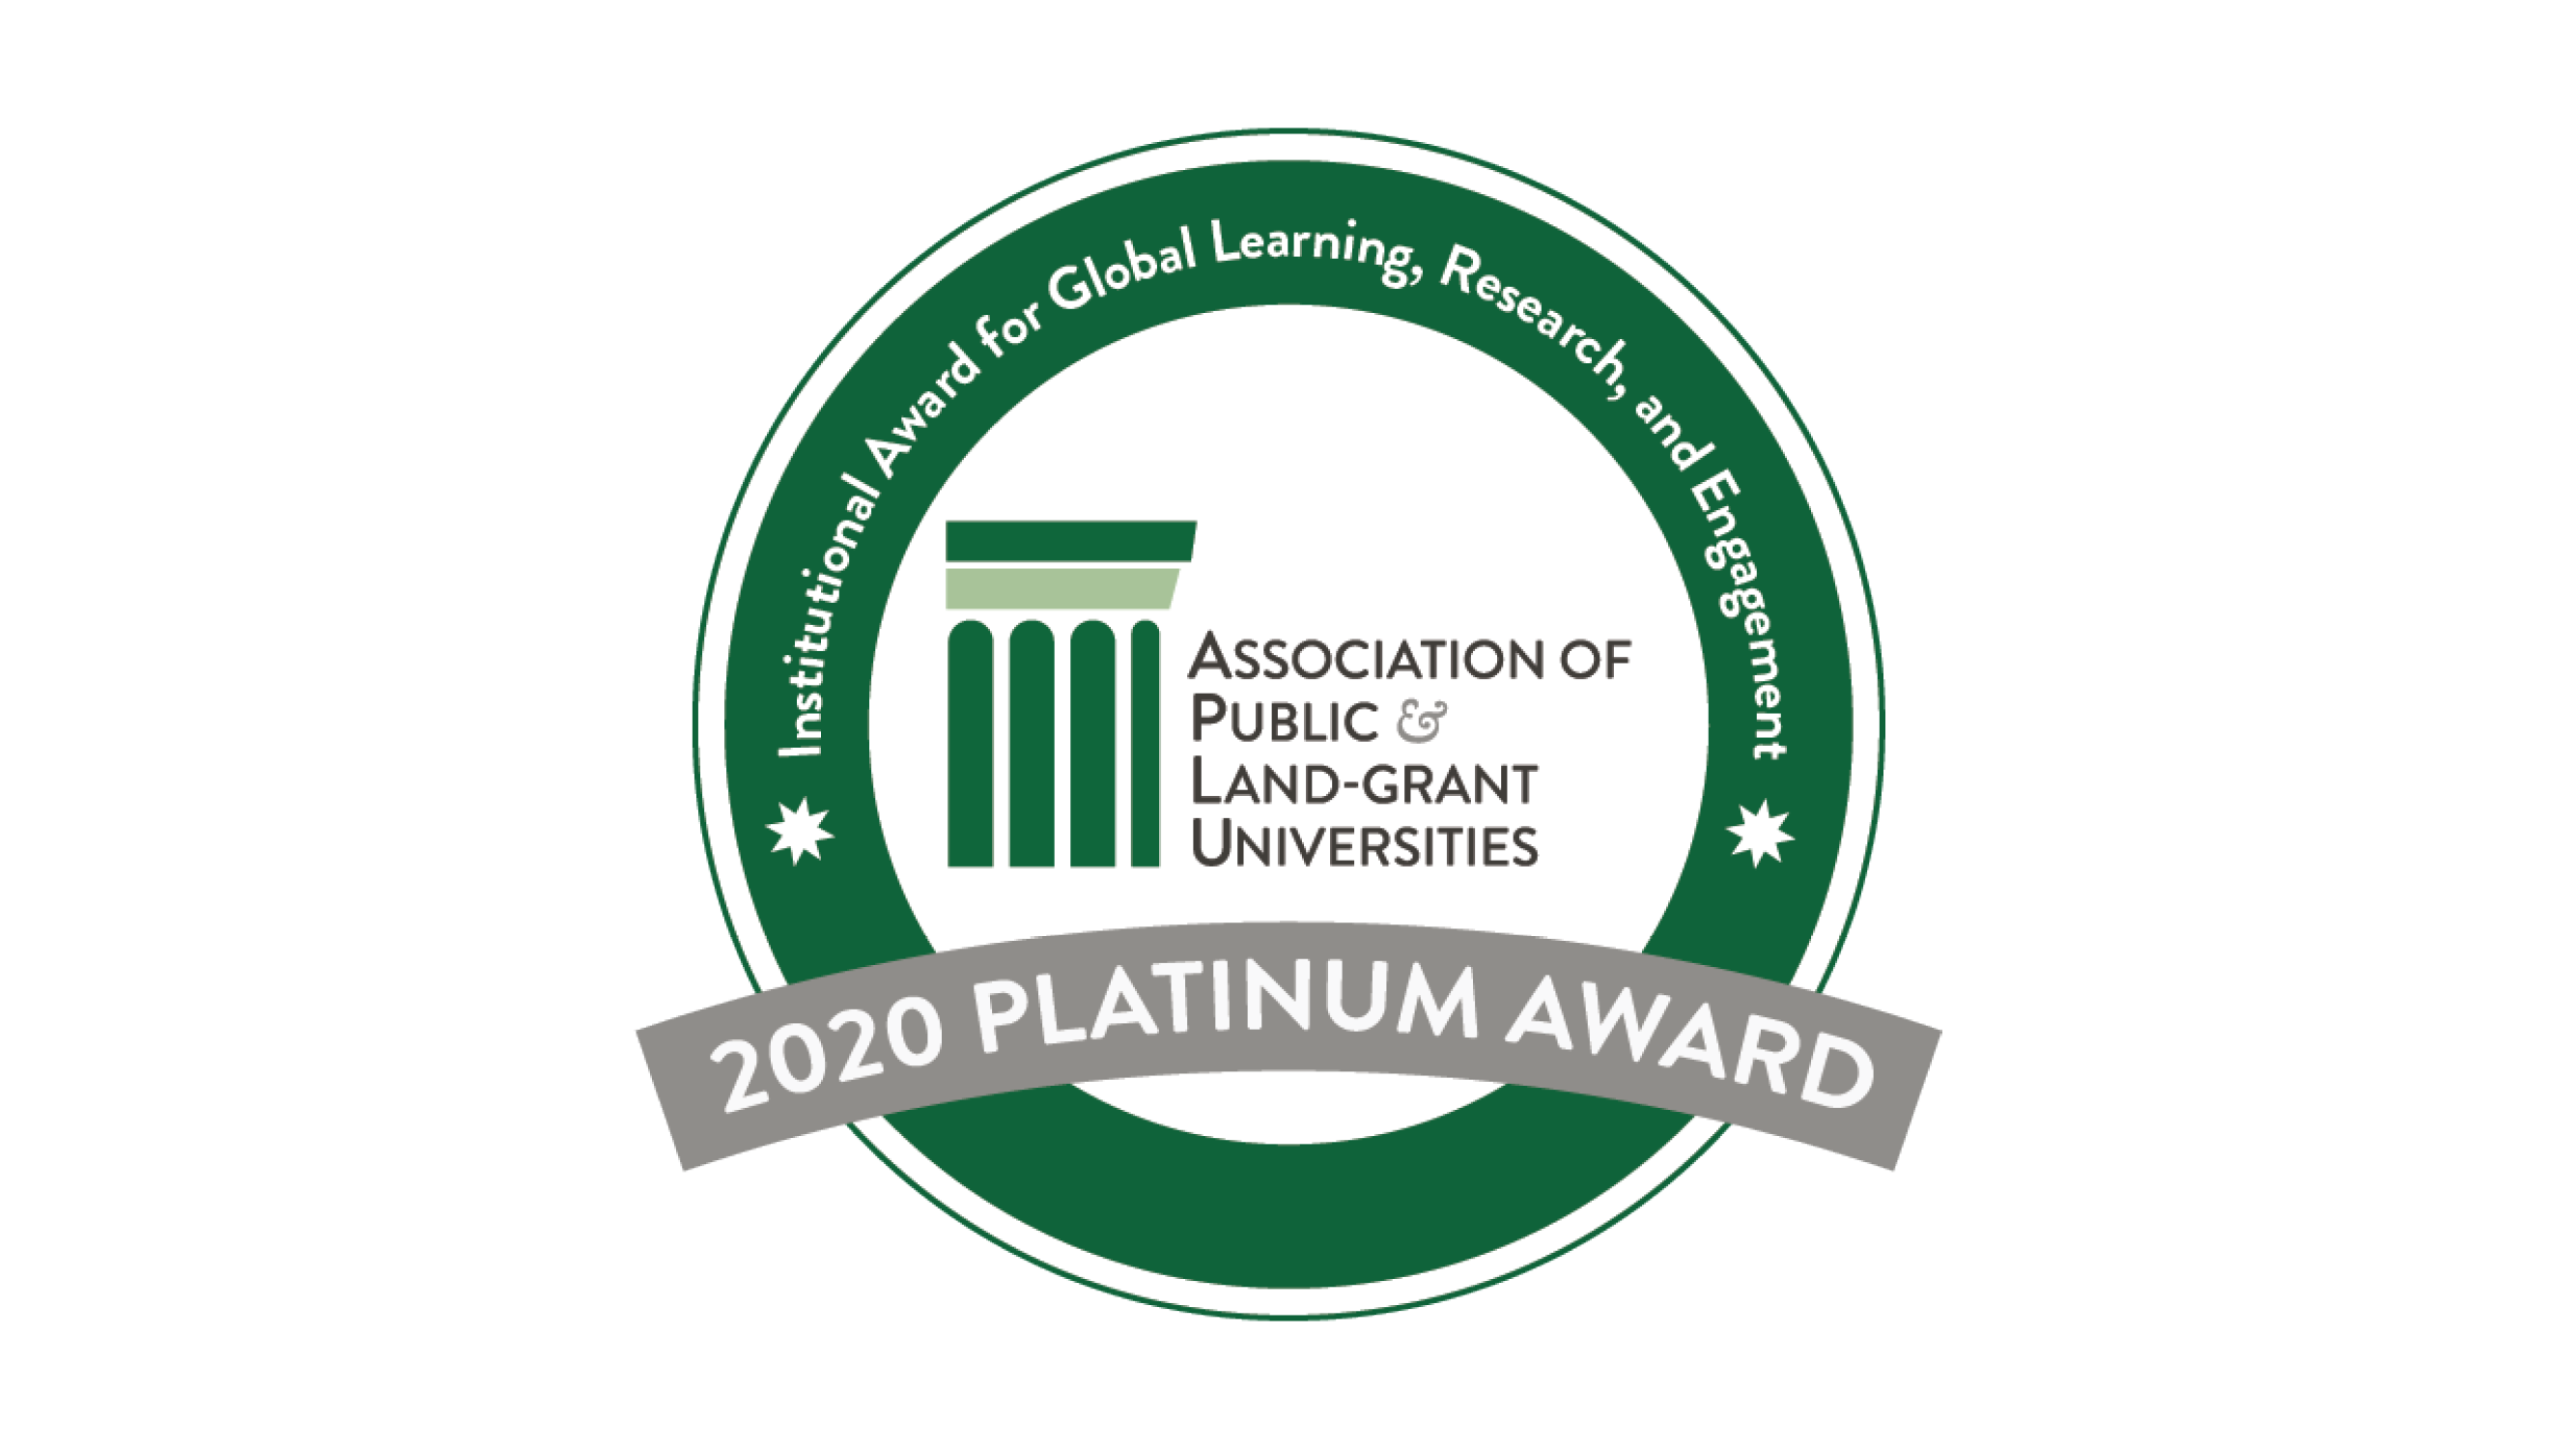 APLU Award Seal with Platinum Award text